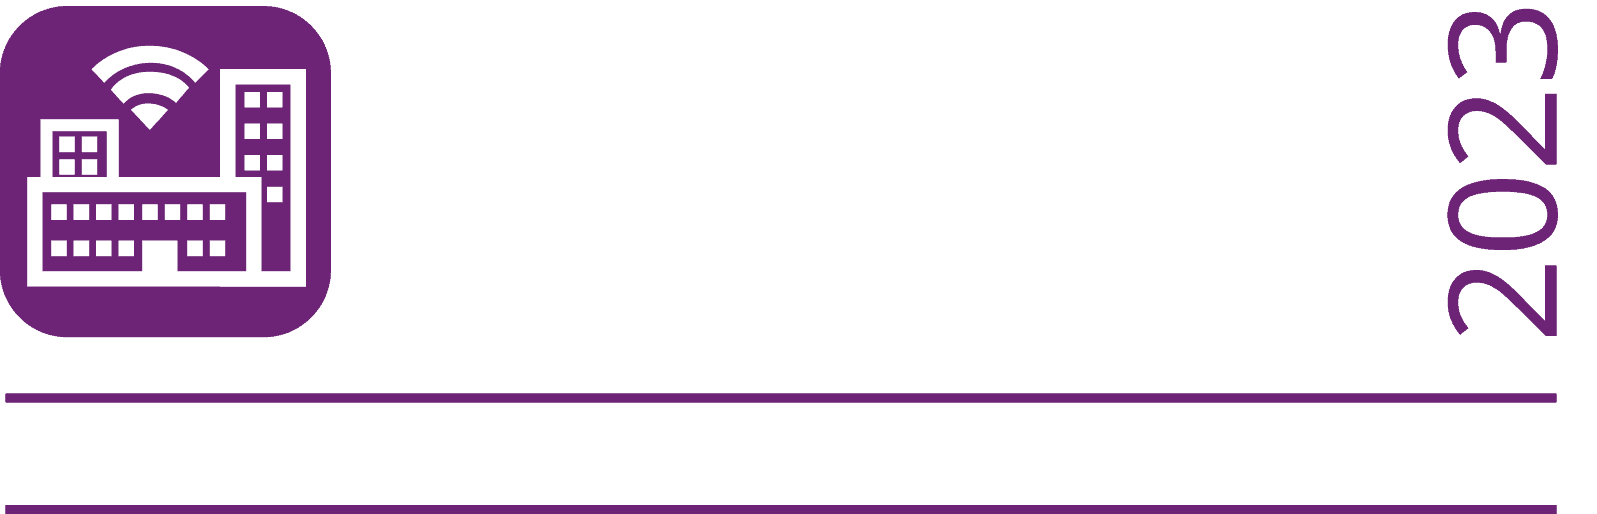 Ses vi på Stockholm SmartCity expo?